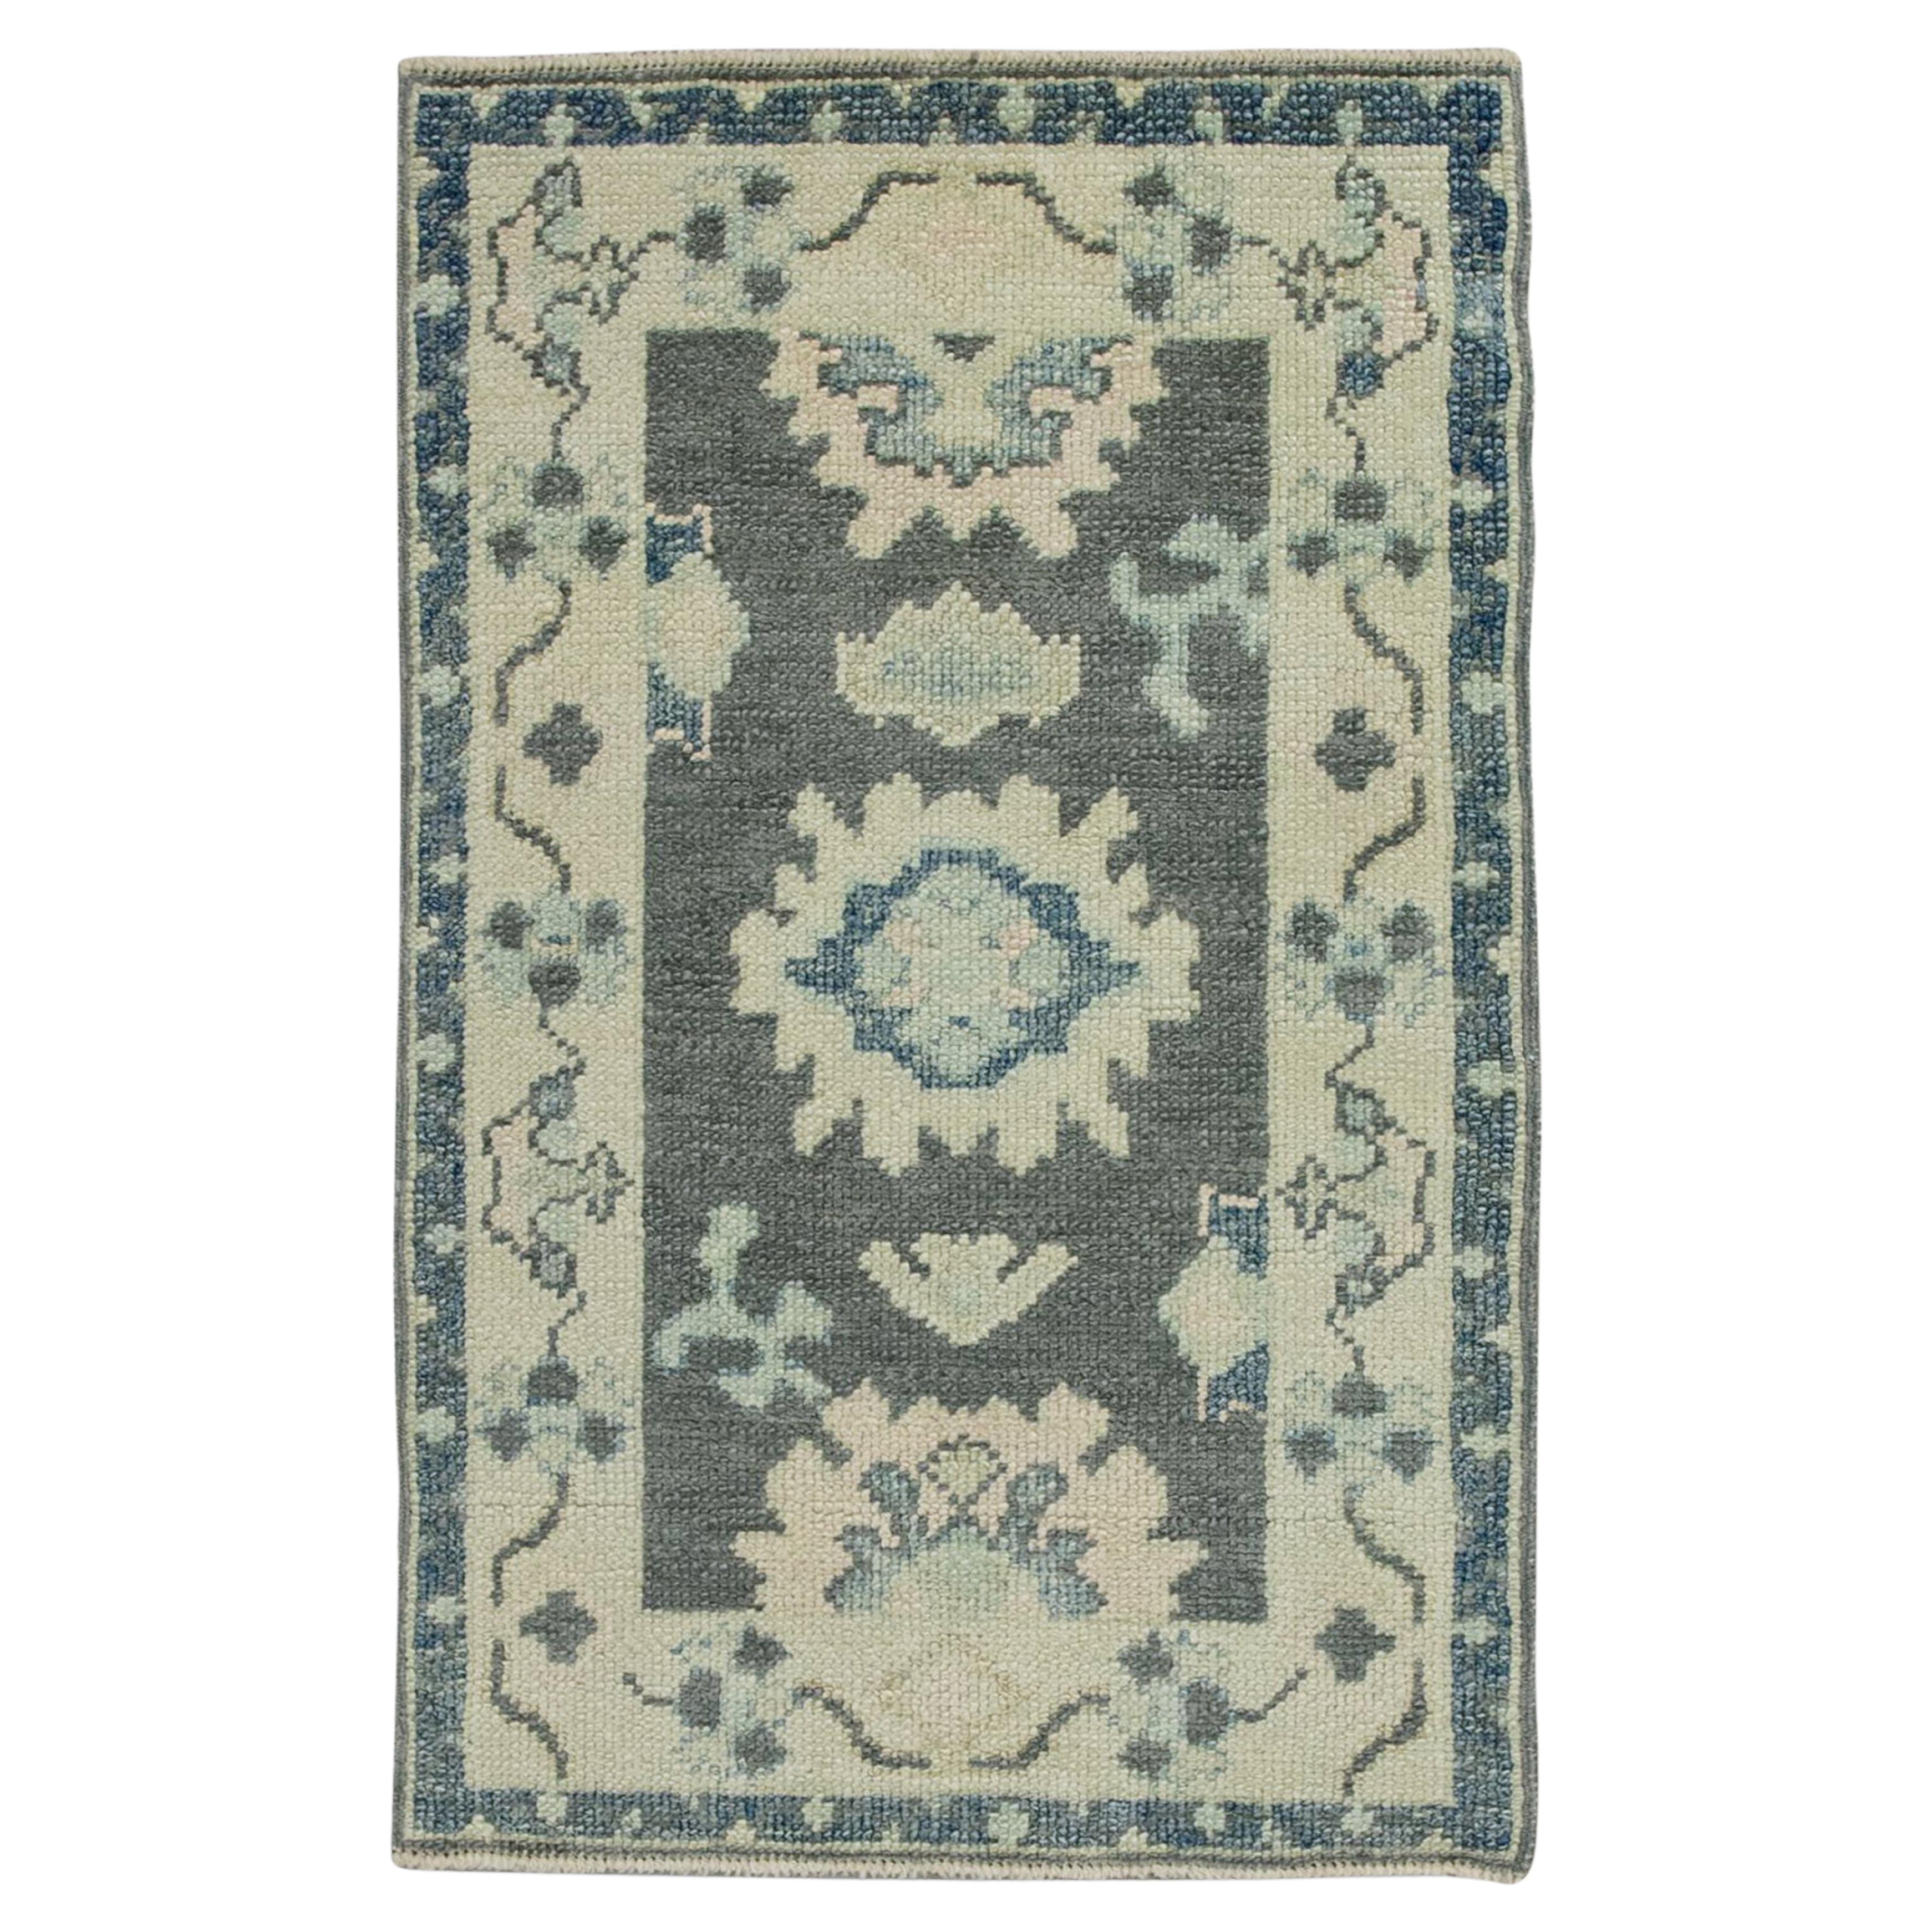 Handgewebter türkischer Oushak-Teppich aus Wolle in Grau & Blau mit Blumenmuster 1'11" x 3'2"